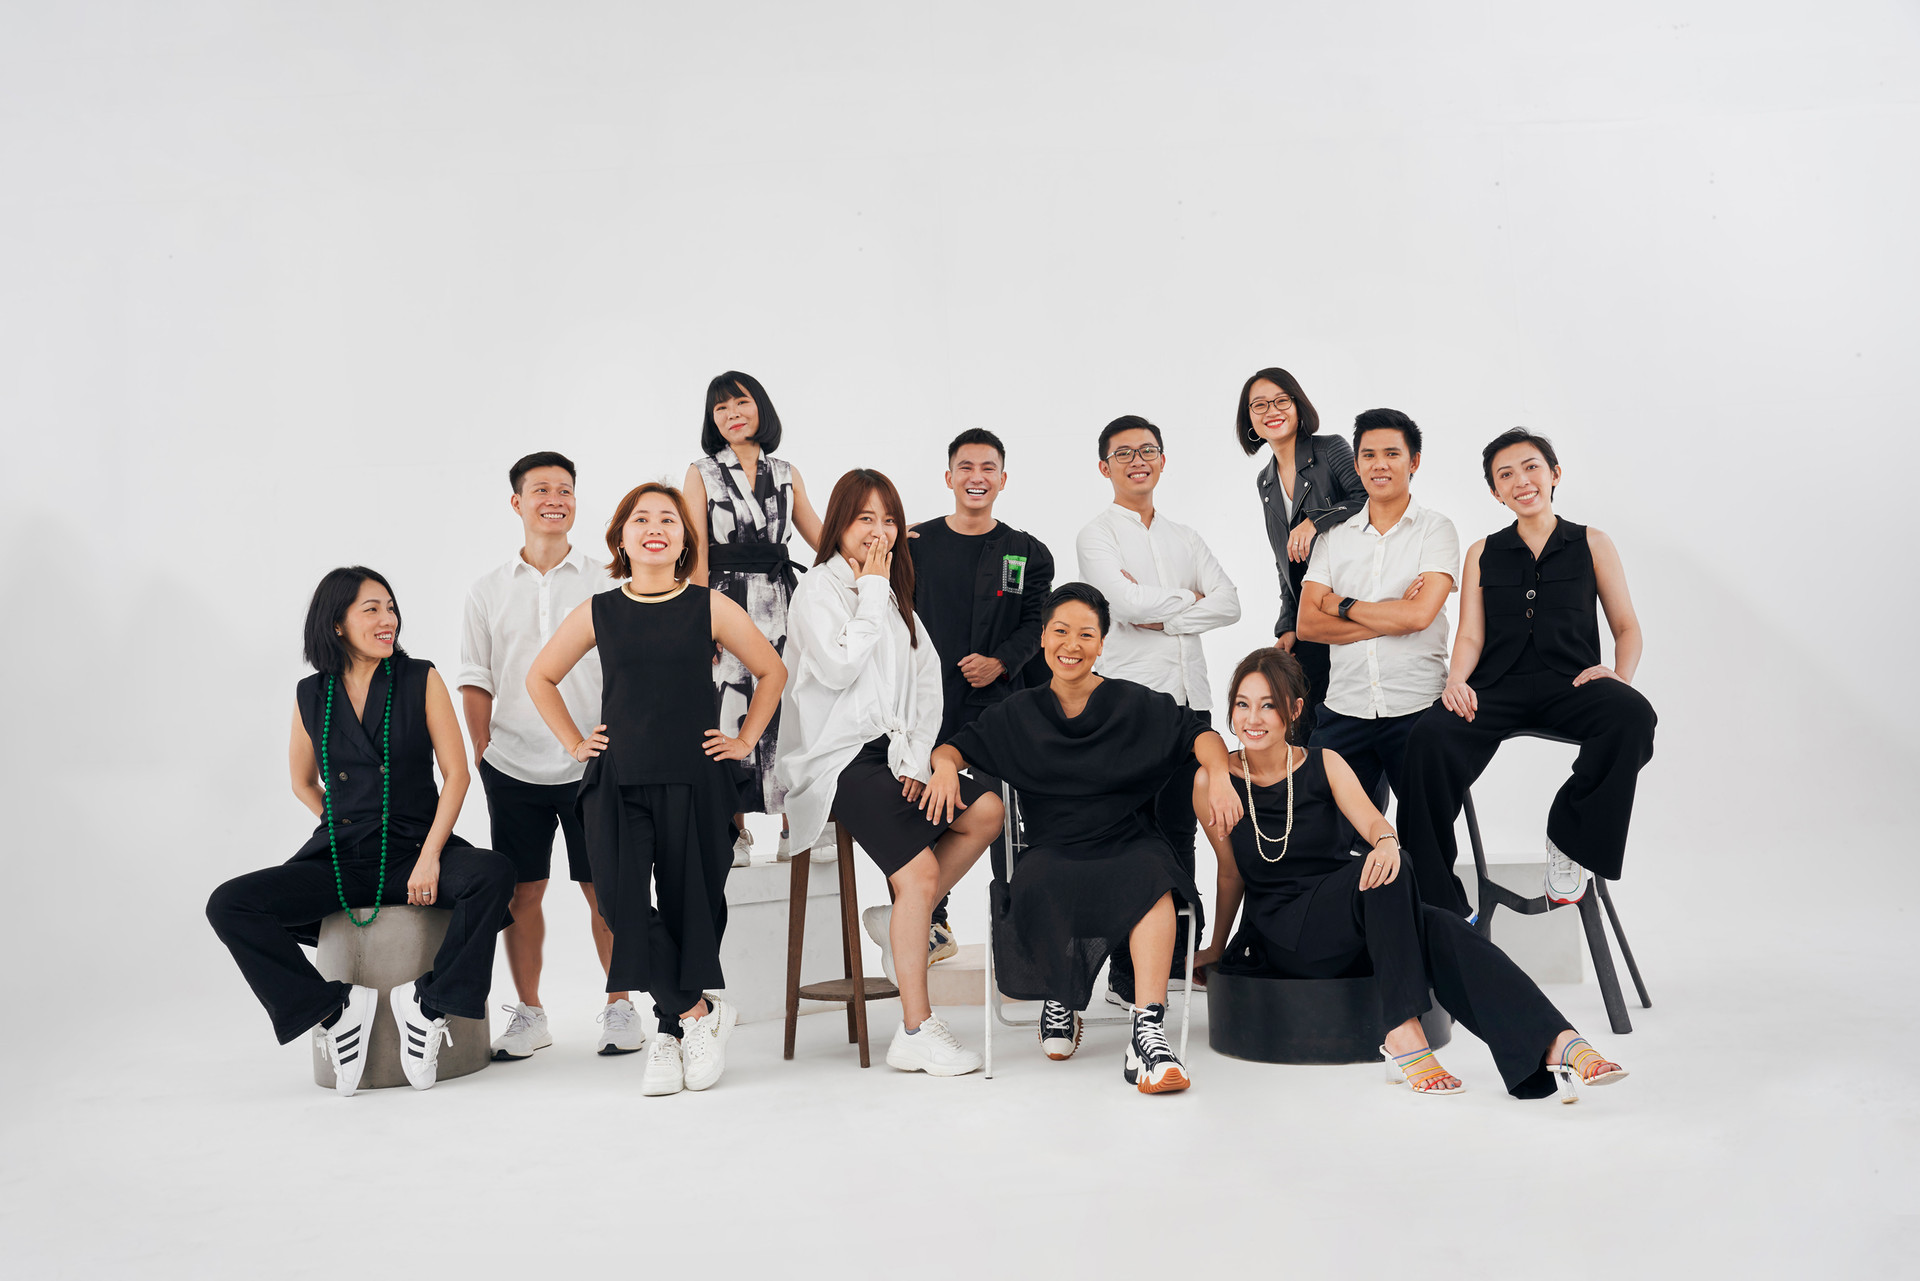 Cuộc phiêu lưu mới của Co-founder Be Group: Lập sàn TMĐT mua bán quần áo cũ, gọi được 1 triệu USD chỉ sau 4 tháng - Ảnh 2.